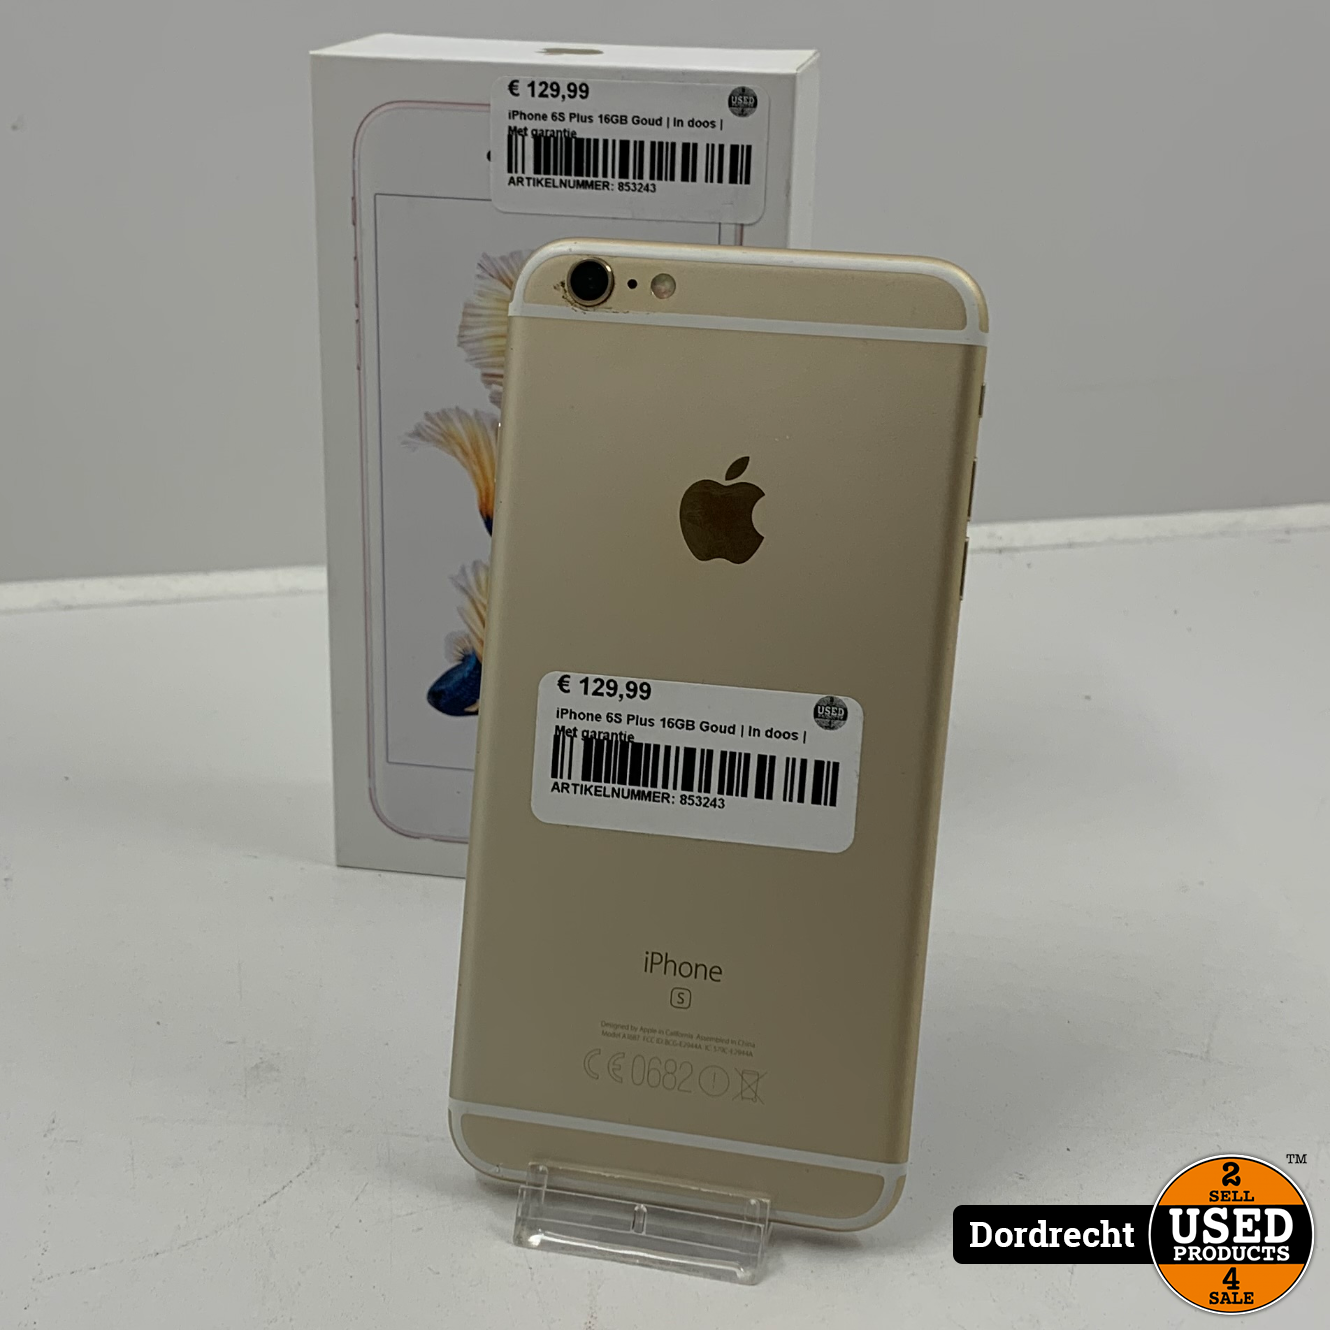 Maladroit auteur buste iPhone 6S Plus 16GB Goud | Accu 100% | In doos | Met garantie - Used  Products Dordrecht